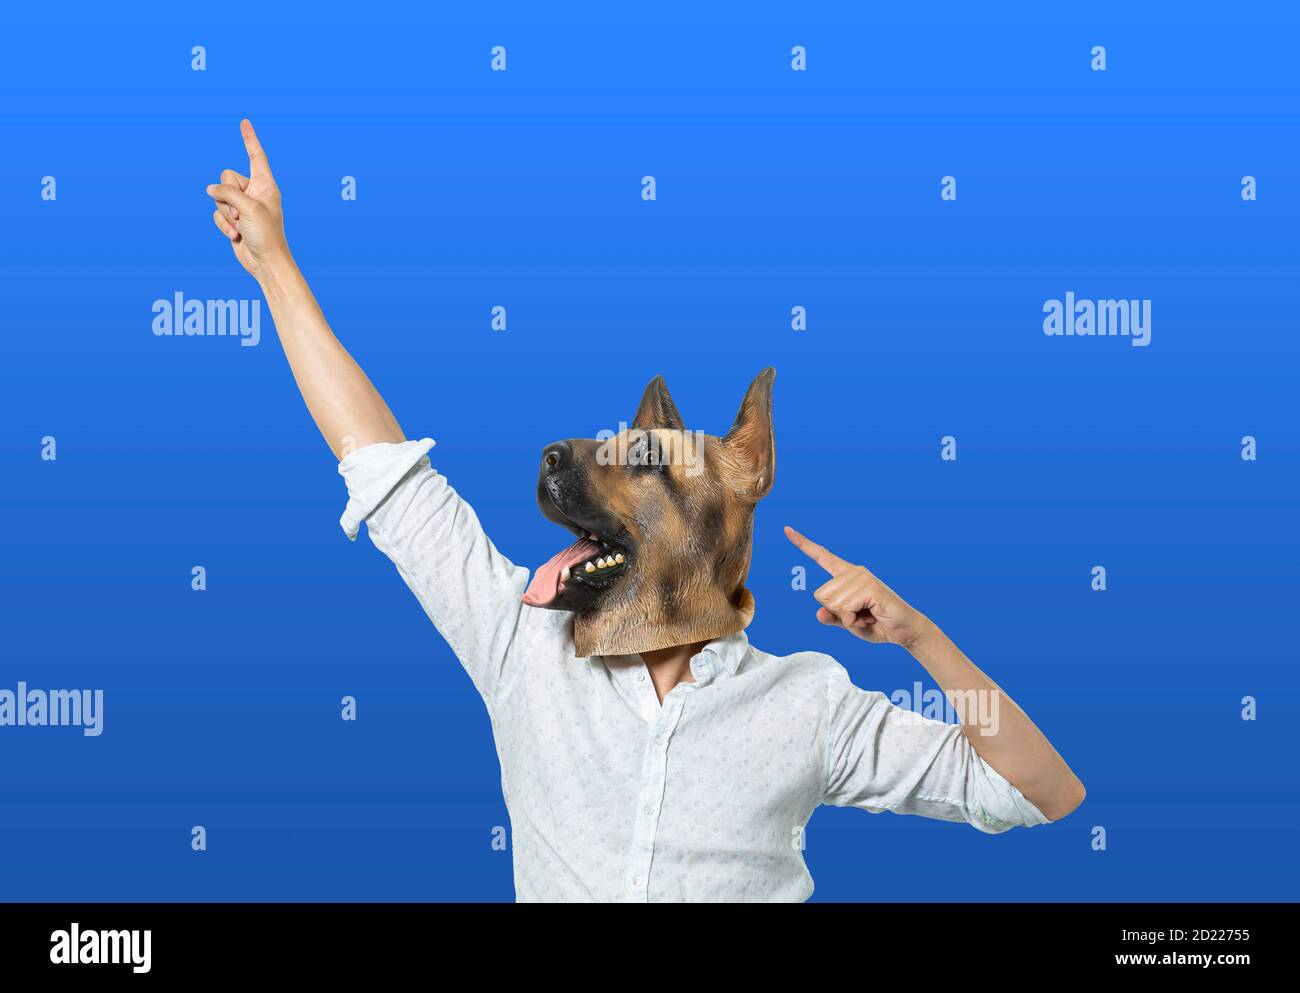 Homme portant un masque de chien pointant vers le haut dans la posture de célébration. Arrière-plan bleu isolé. Prise de vue moyenne. Banque D'Images